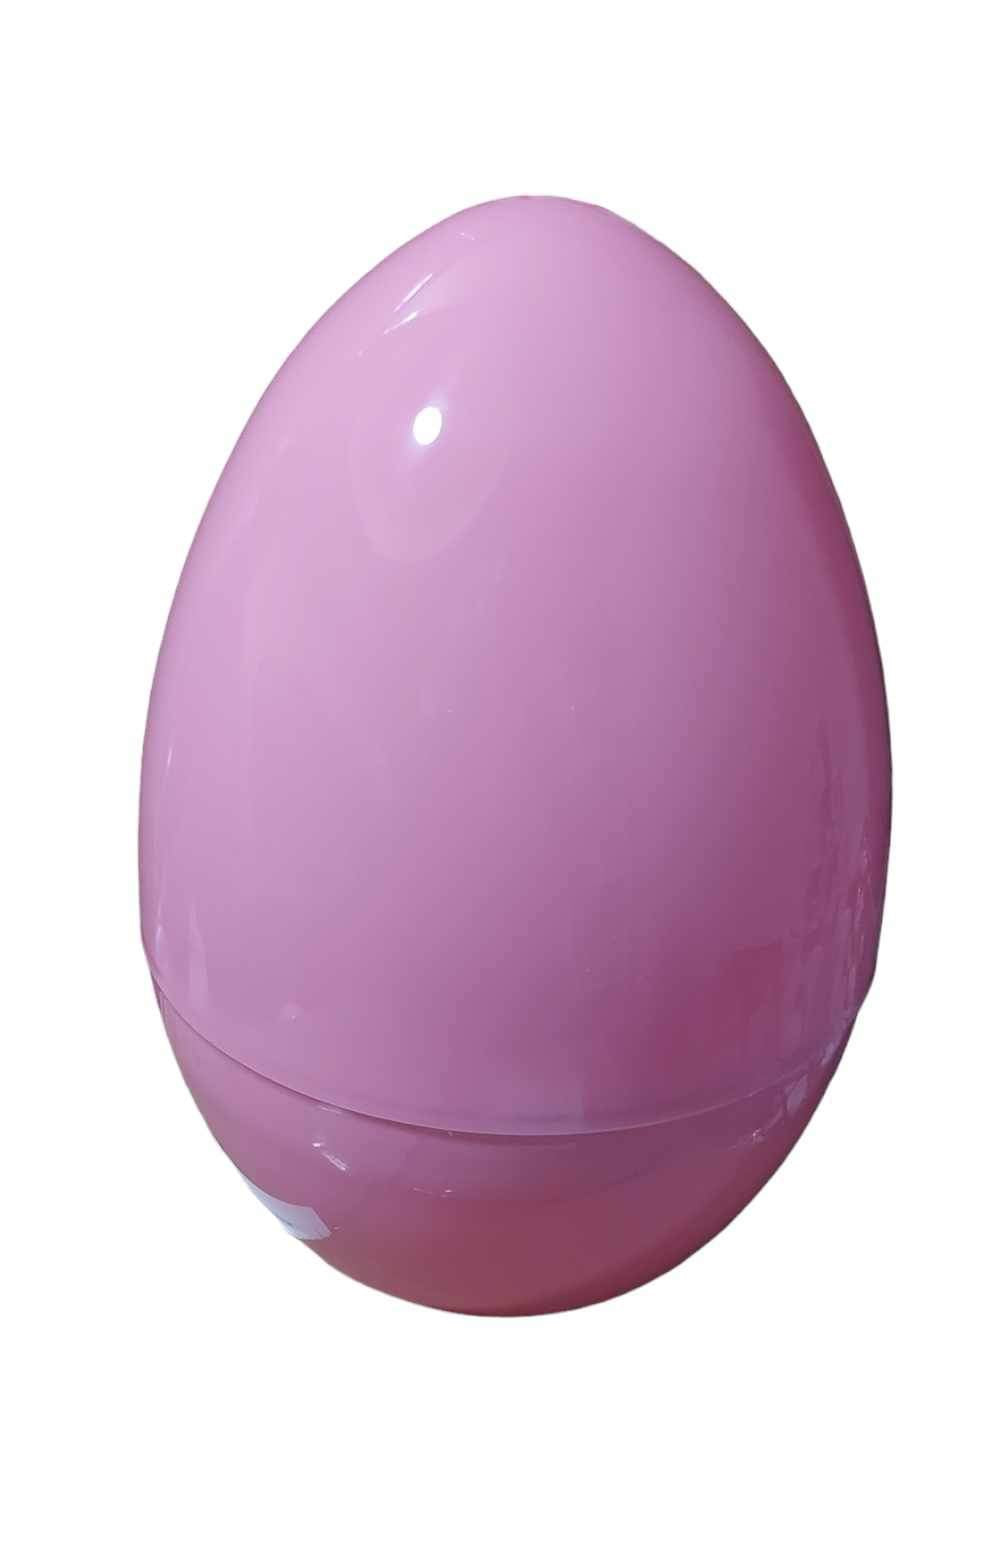 Giant 30cm fillable plastic Easter eggs